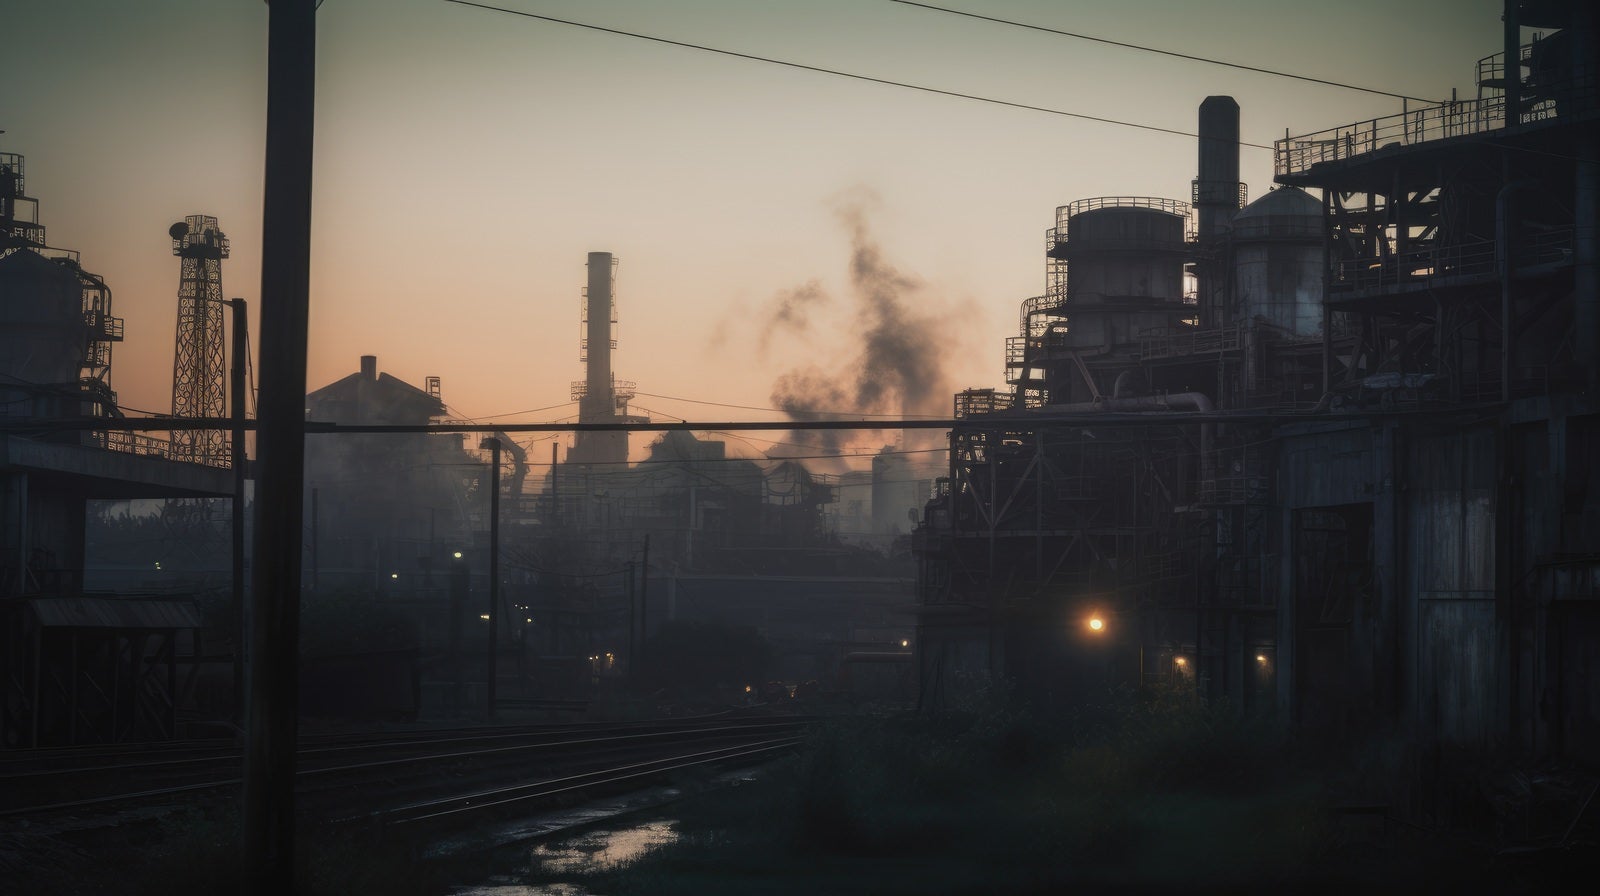 「光化学スモッグによる大気汚染と工場群」の写真